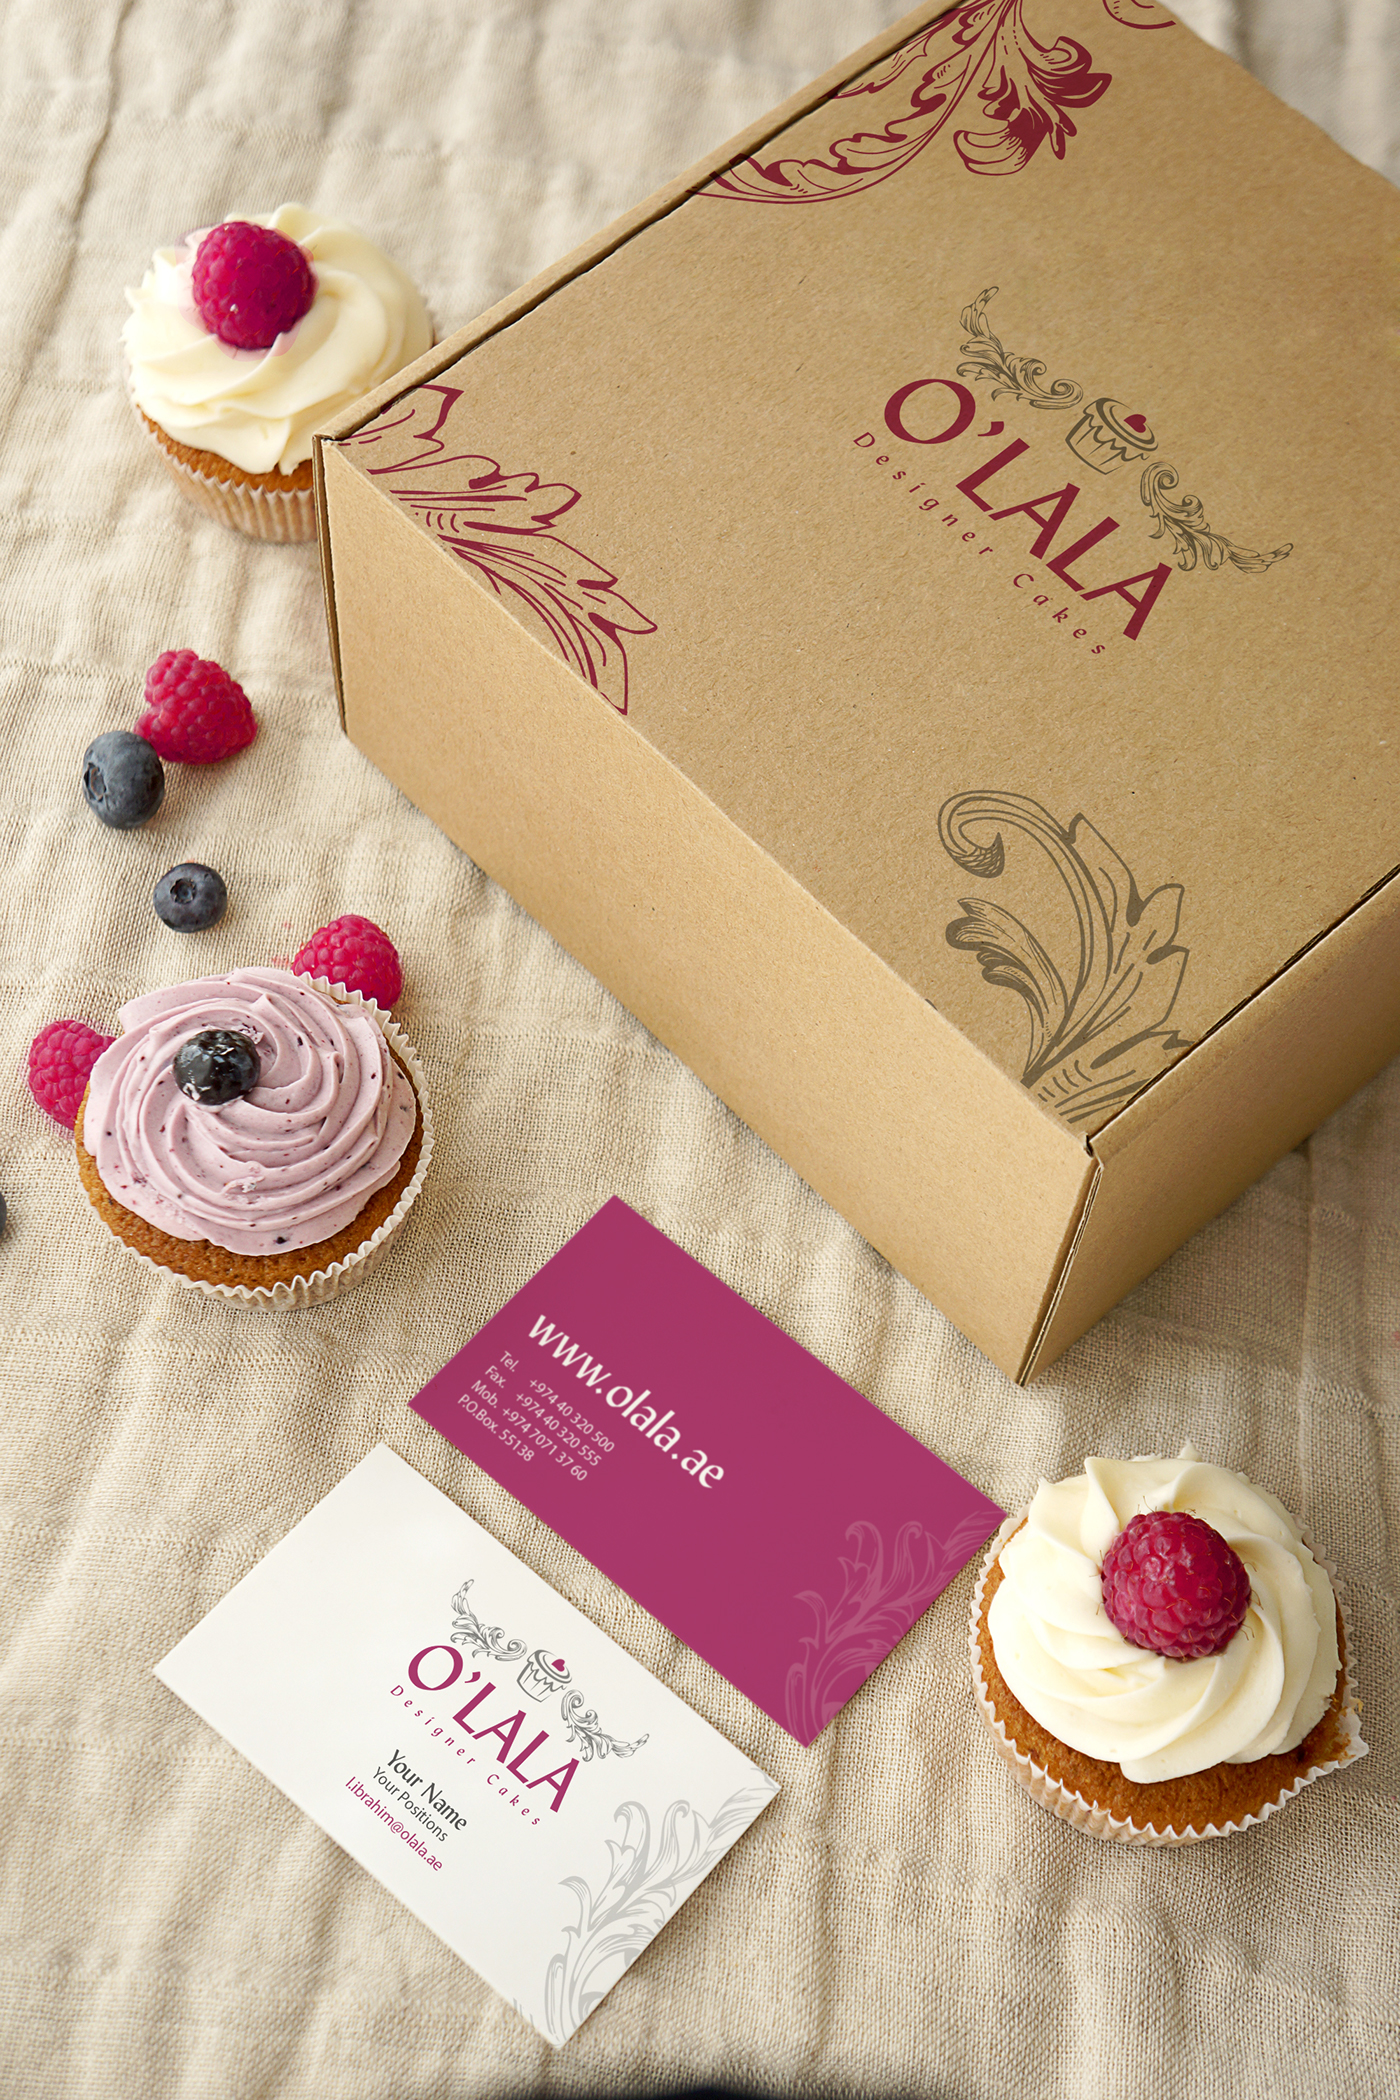 Graphic designe logo cake 3d cakes desserts cupcake] gift brand O'lala custom-made 3D cakes dubai